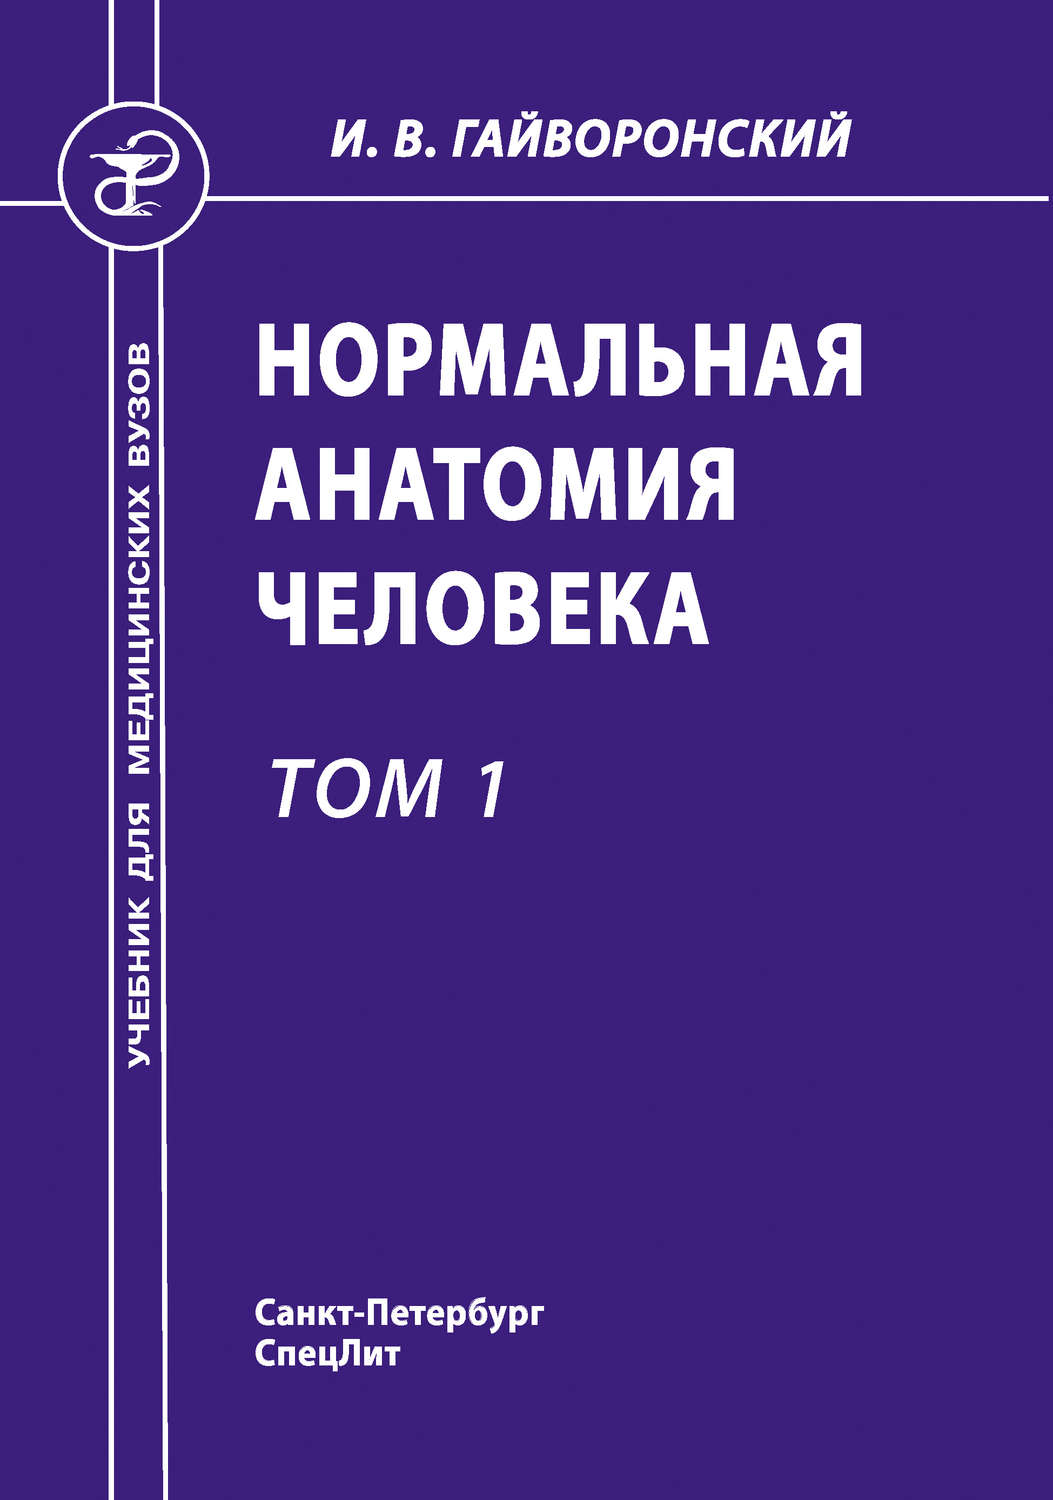 Гайворонский 1 том скачать pdf